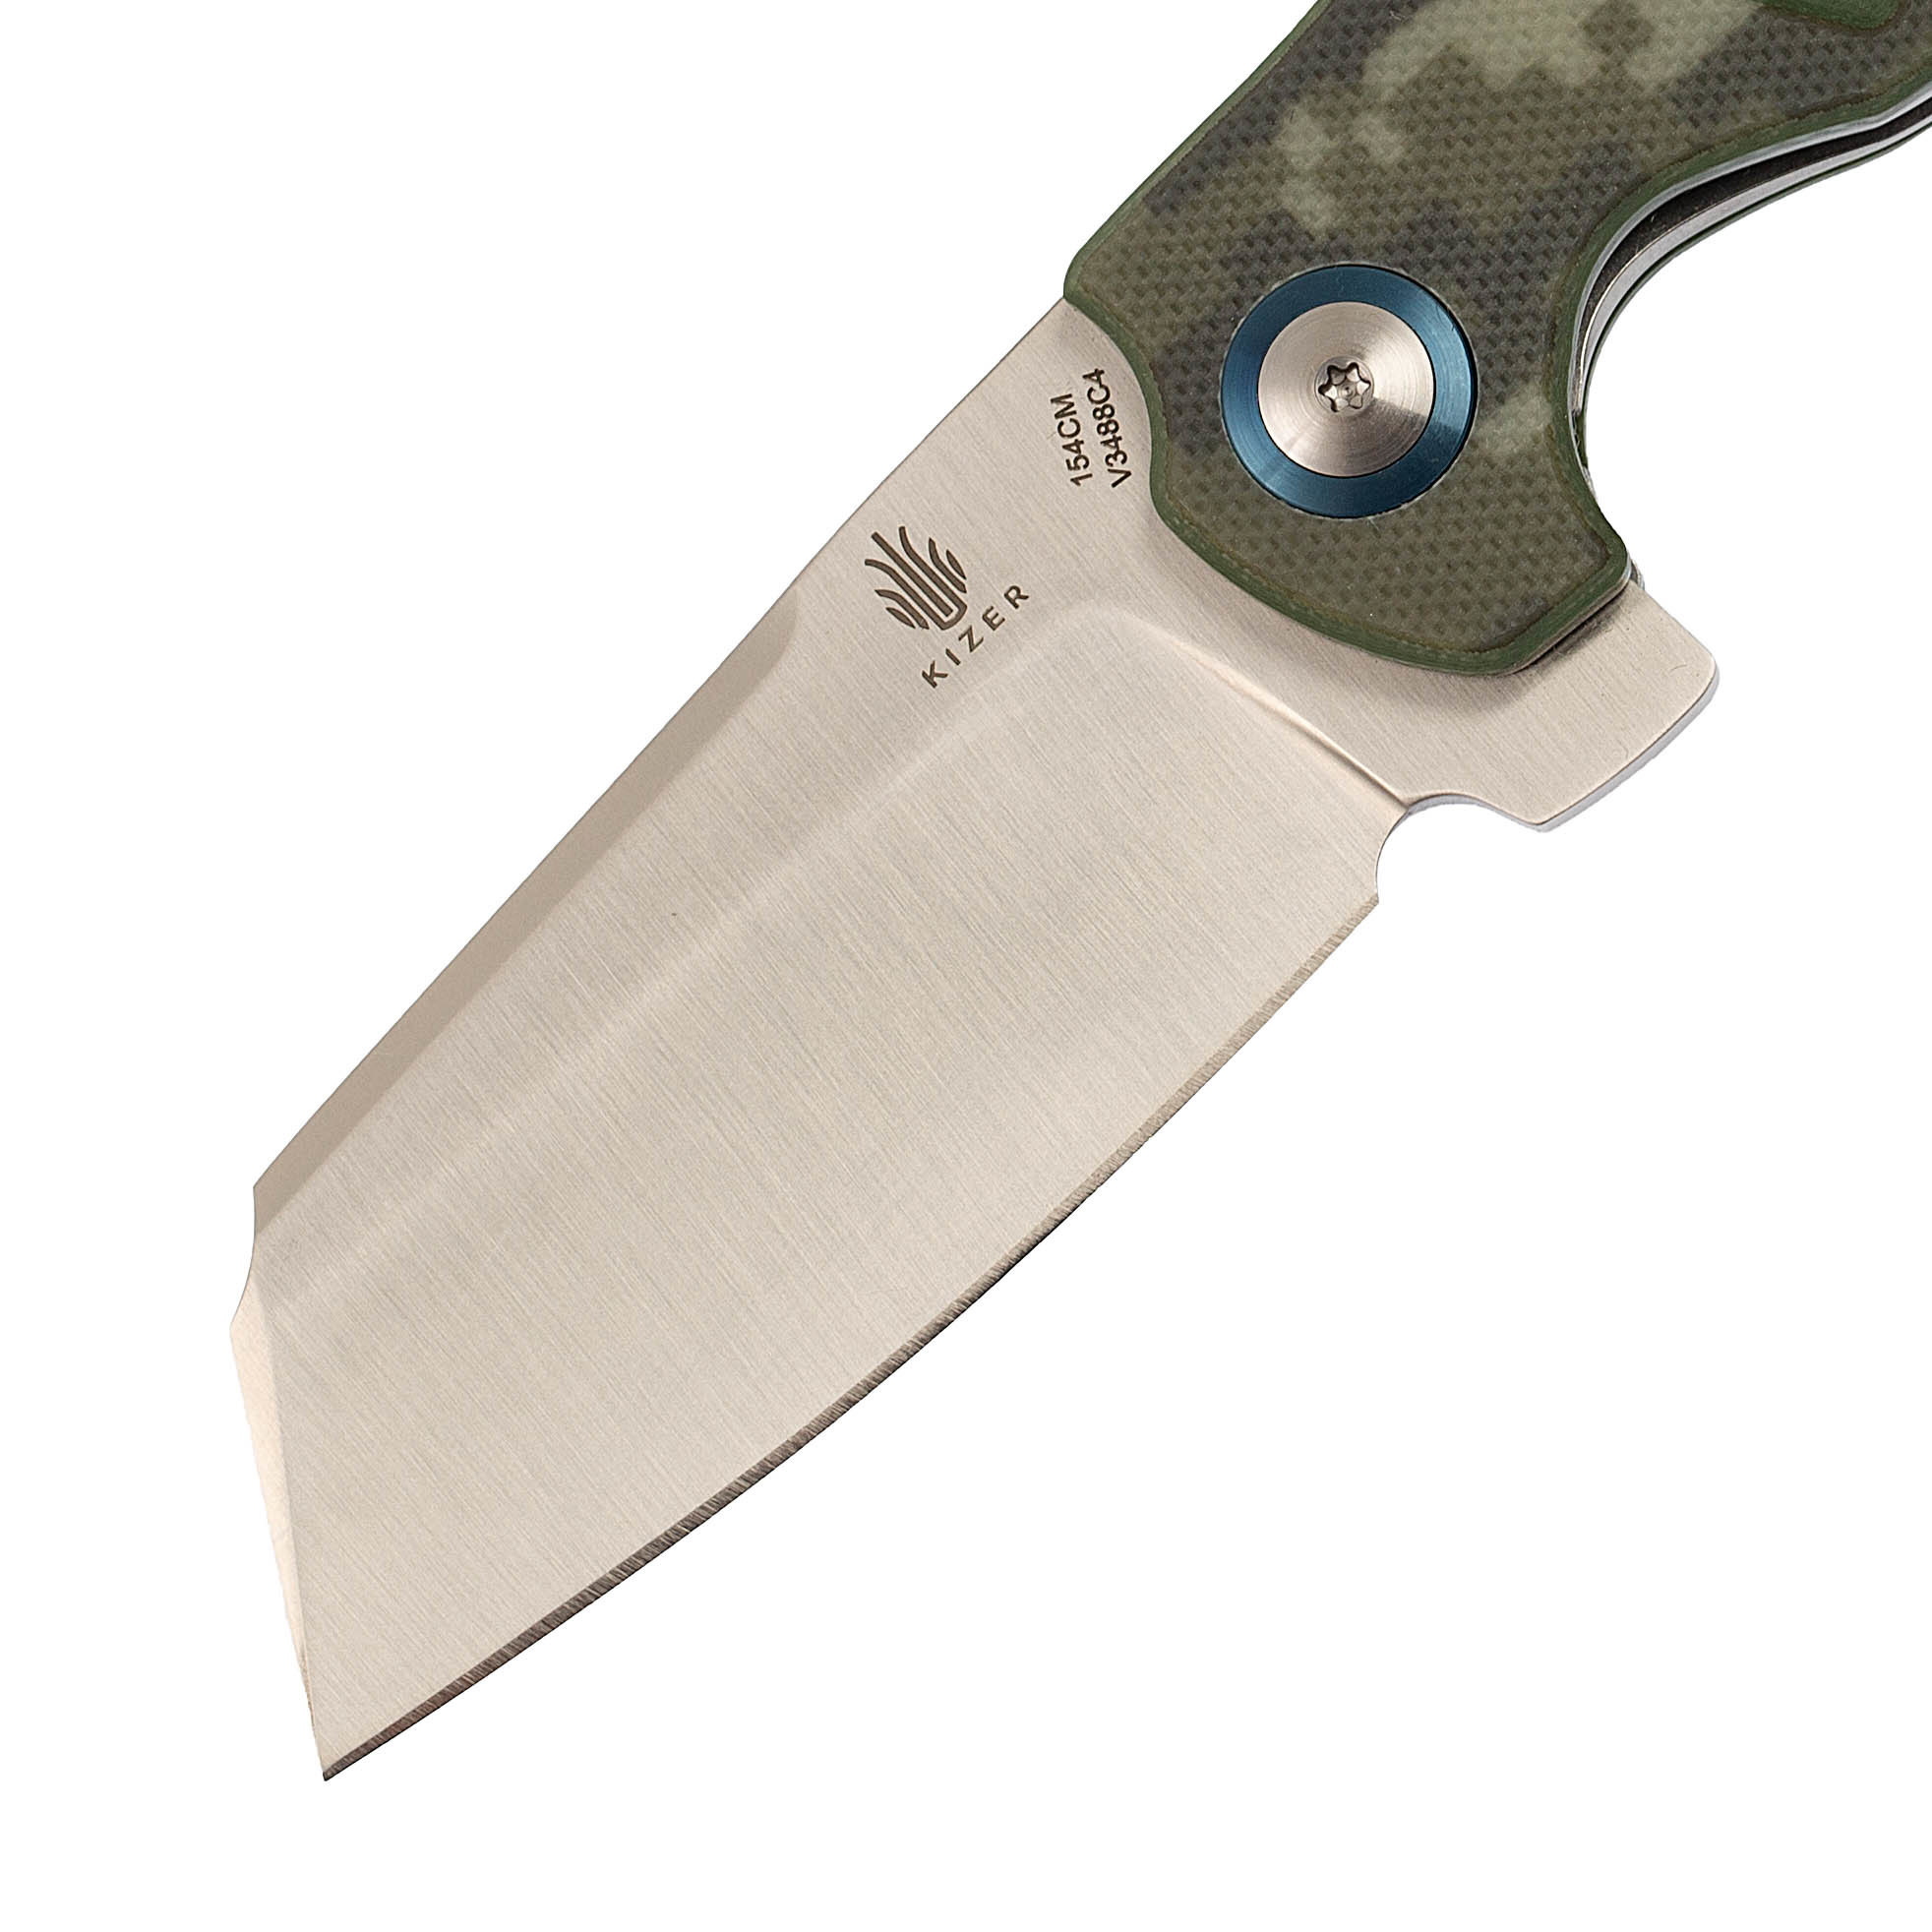 Складной нож Kizer C01C Camo, сталь 154CM, рукоять G10 - фото 2